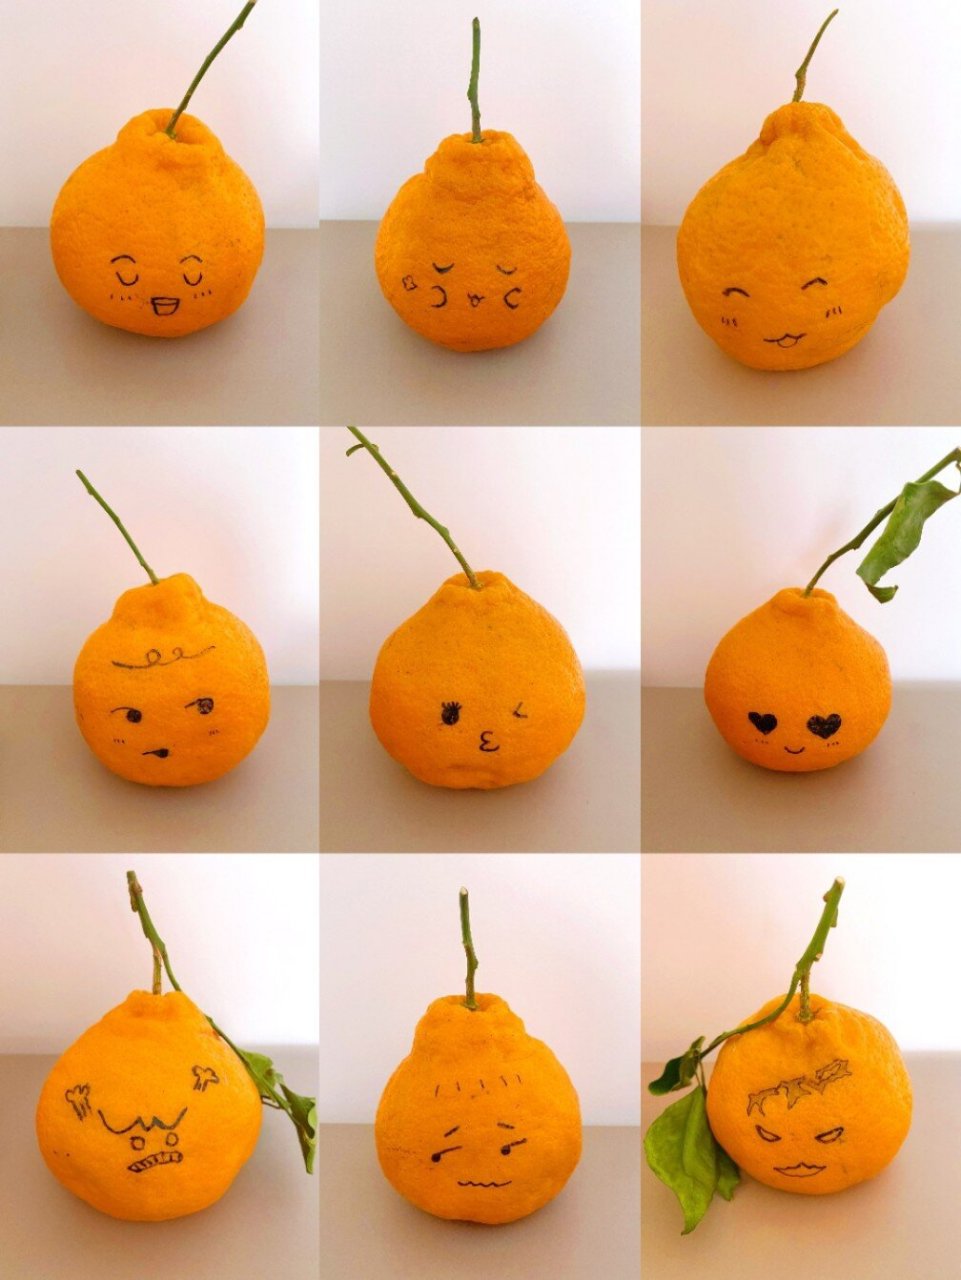 人脸橘子表情包图片